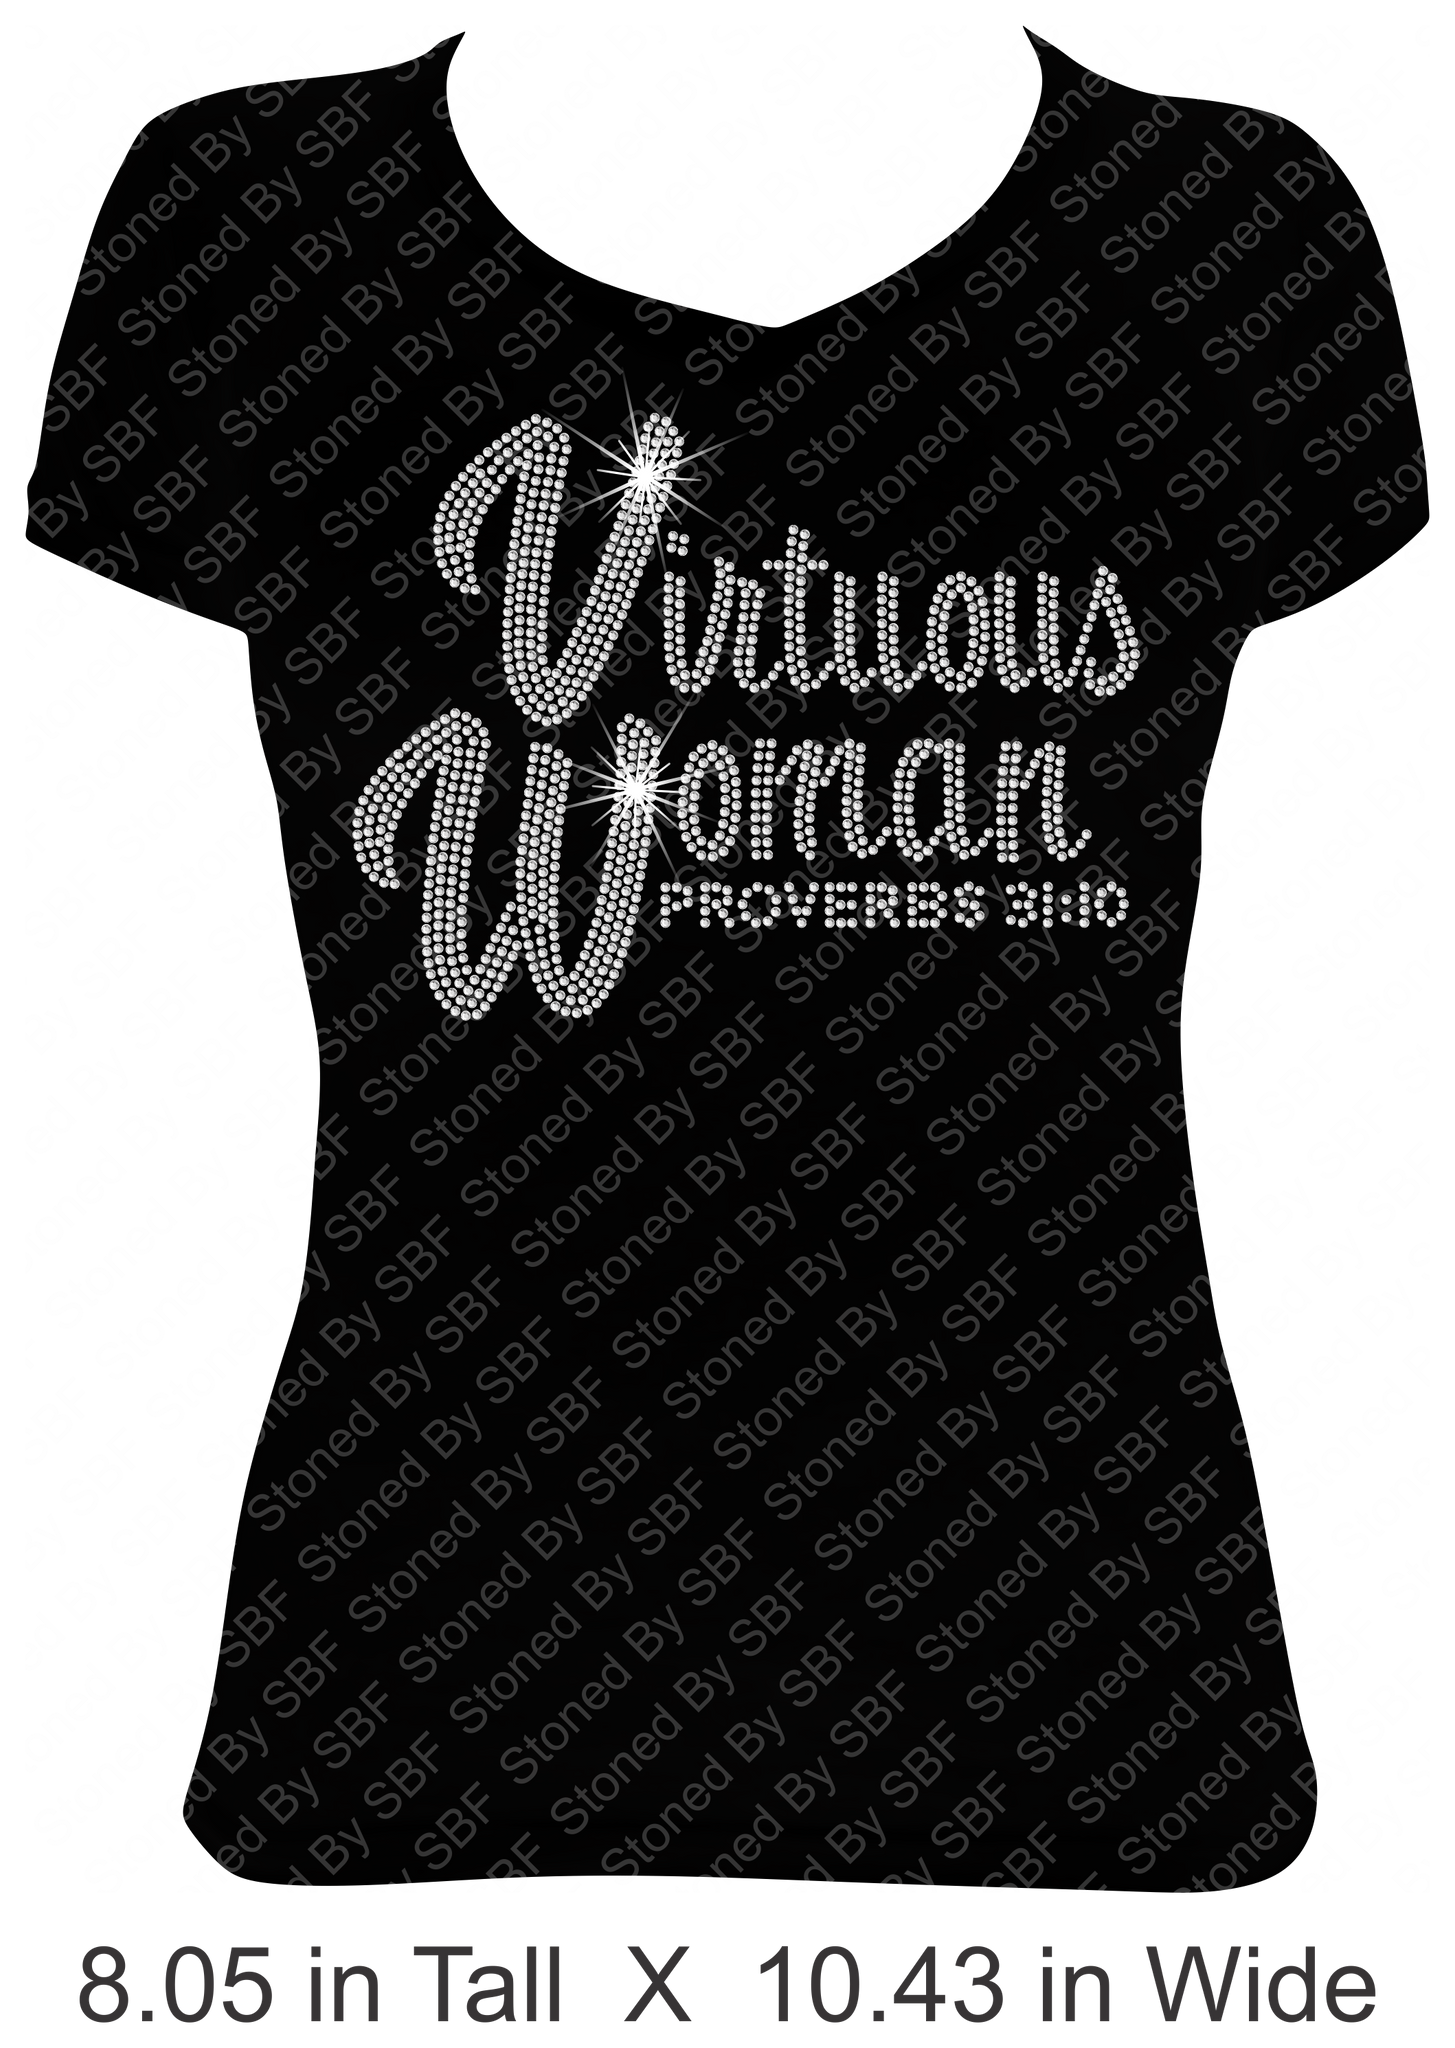 Virtuous Woman